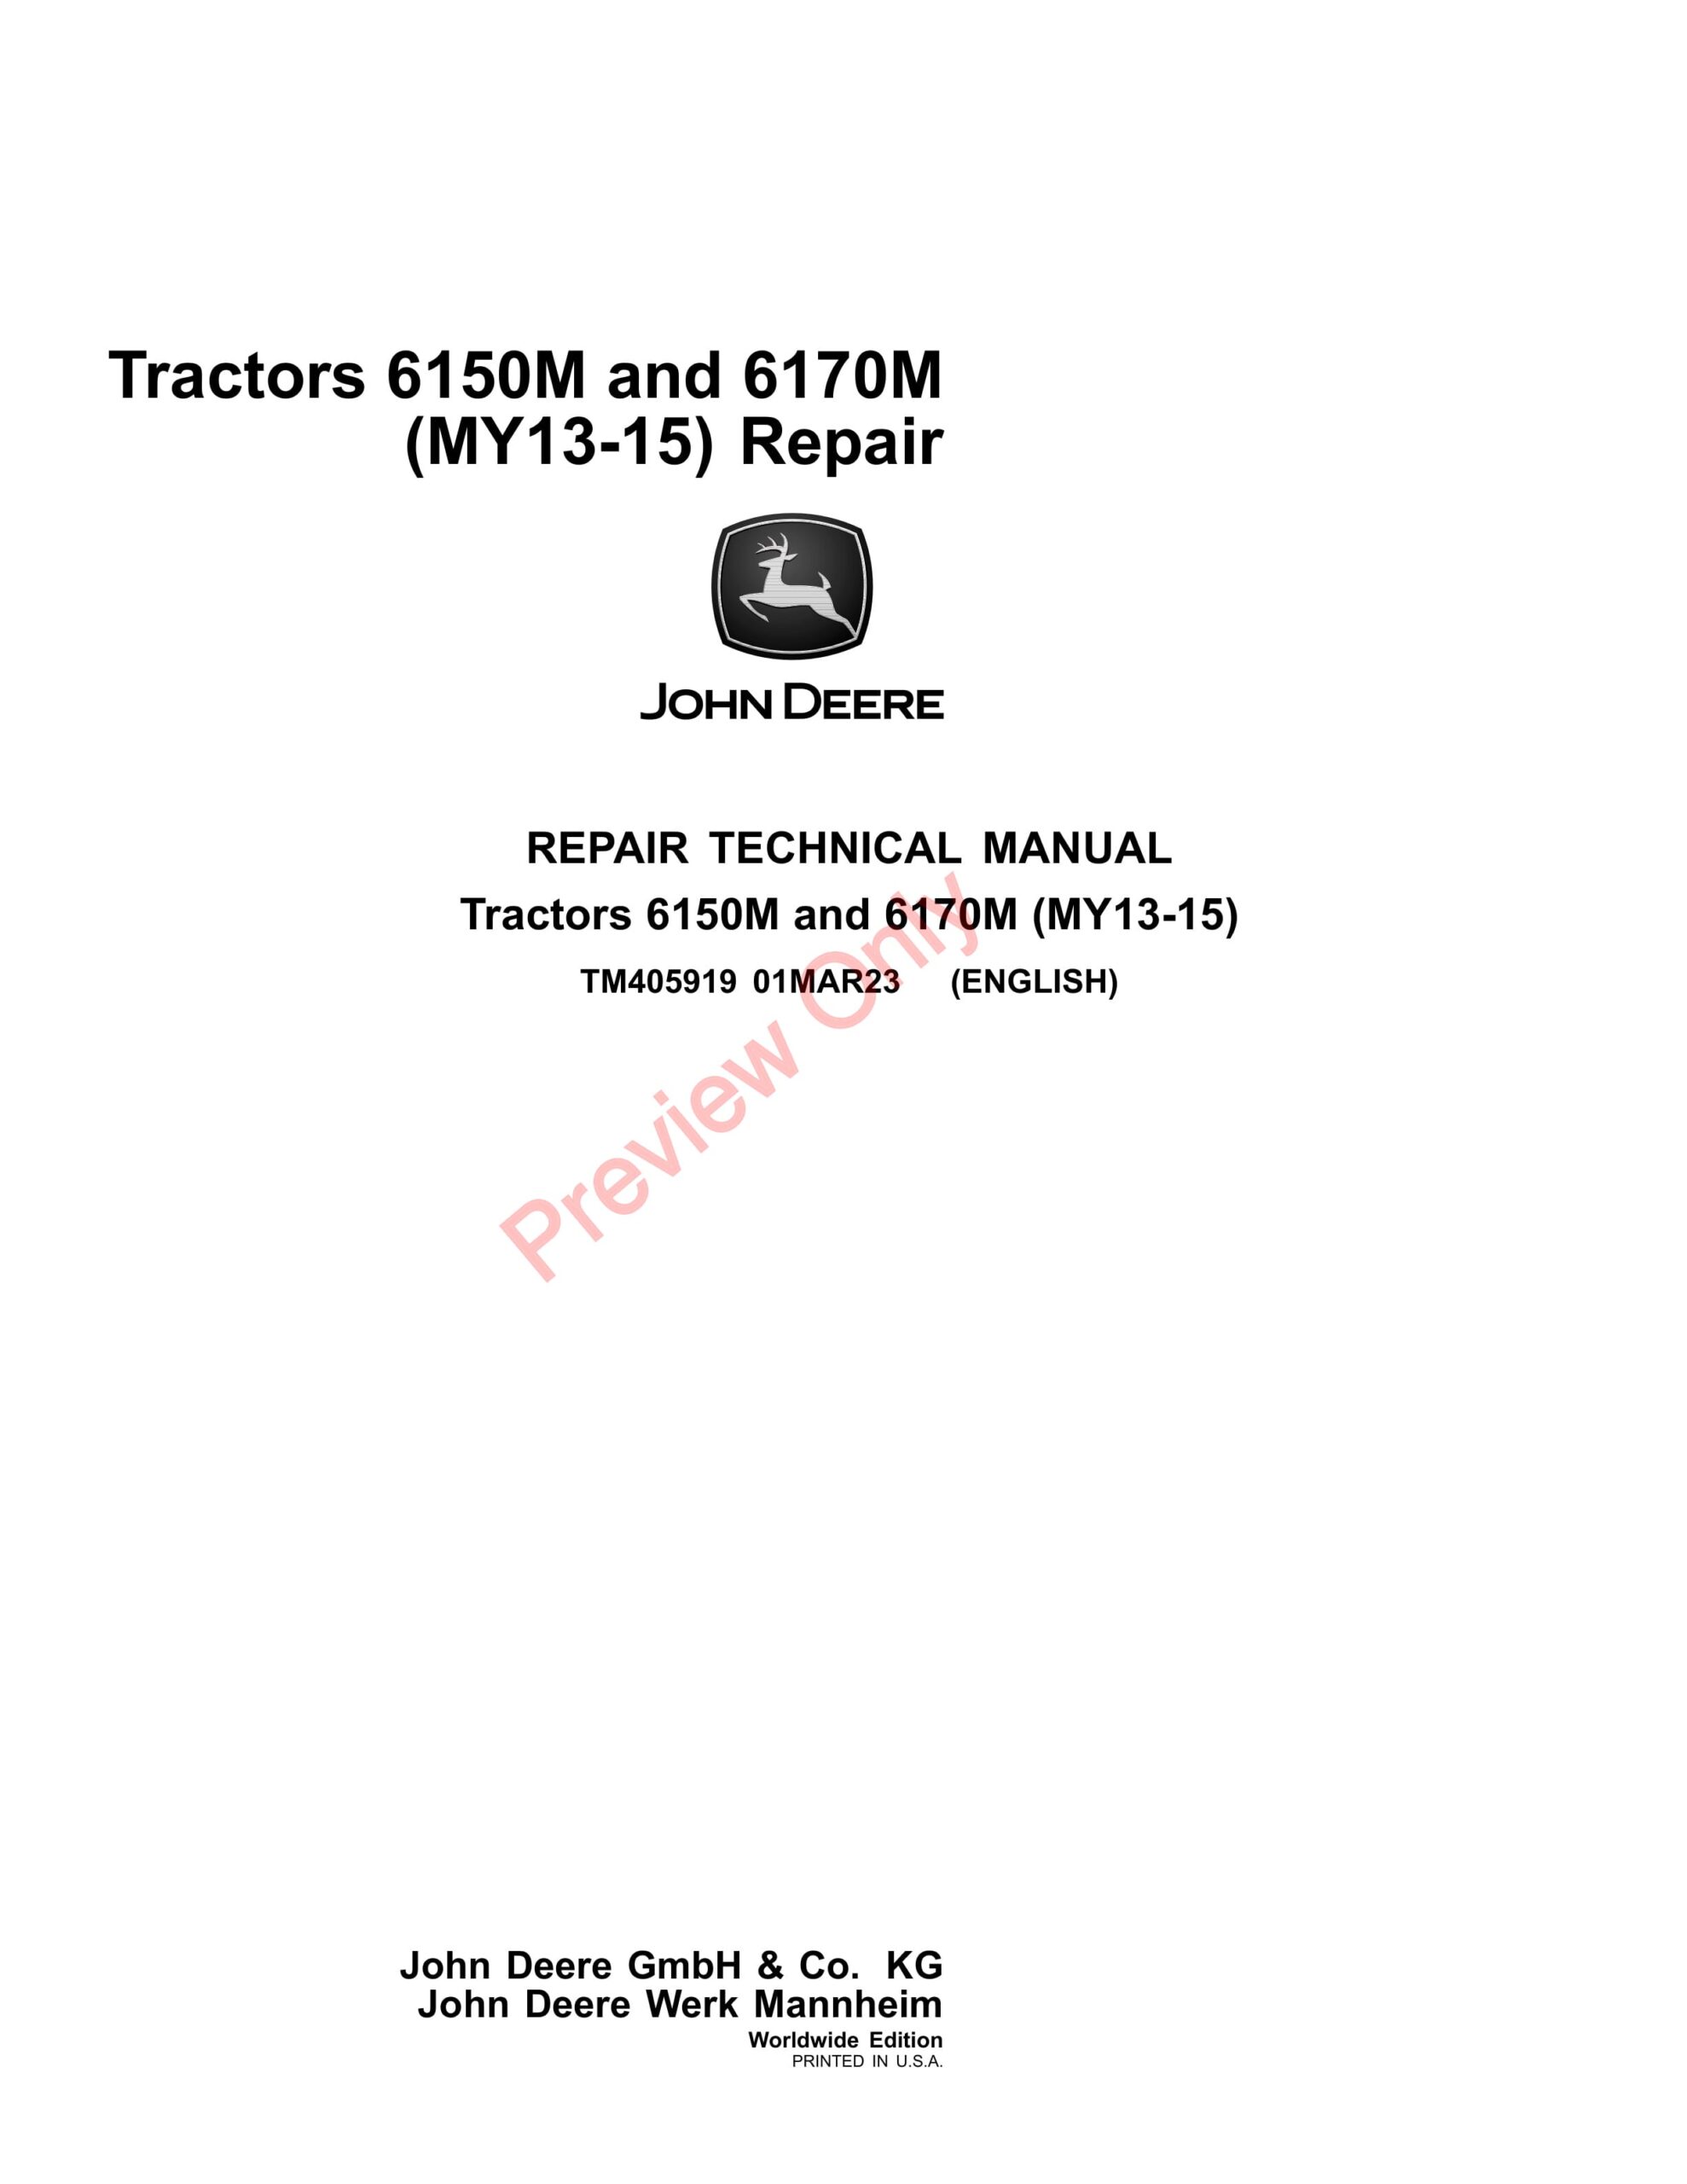 John Deere Tractors 6150M and 6170M (MY13-15) Repair Technical Manual TM405919 01MAR23-1